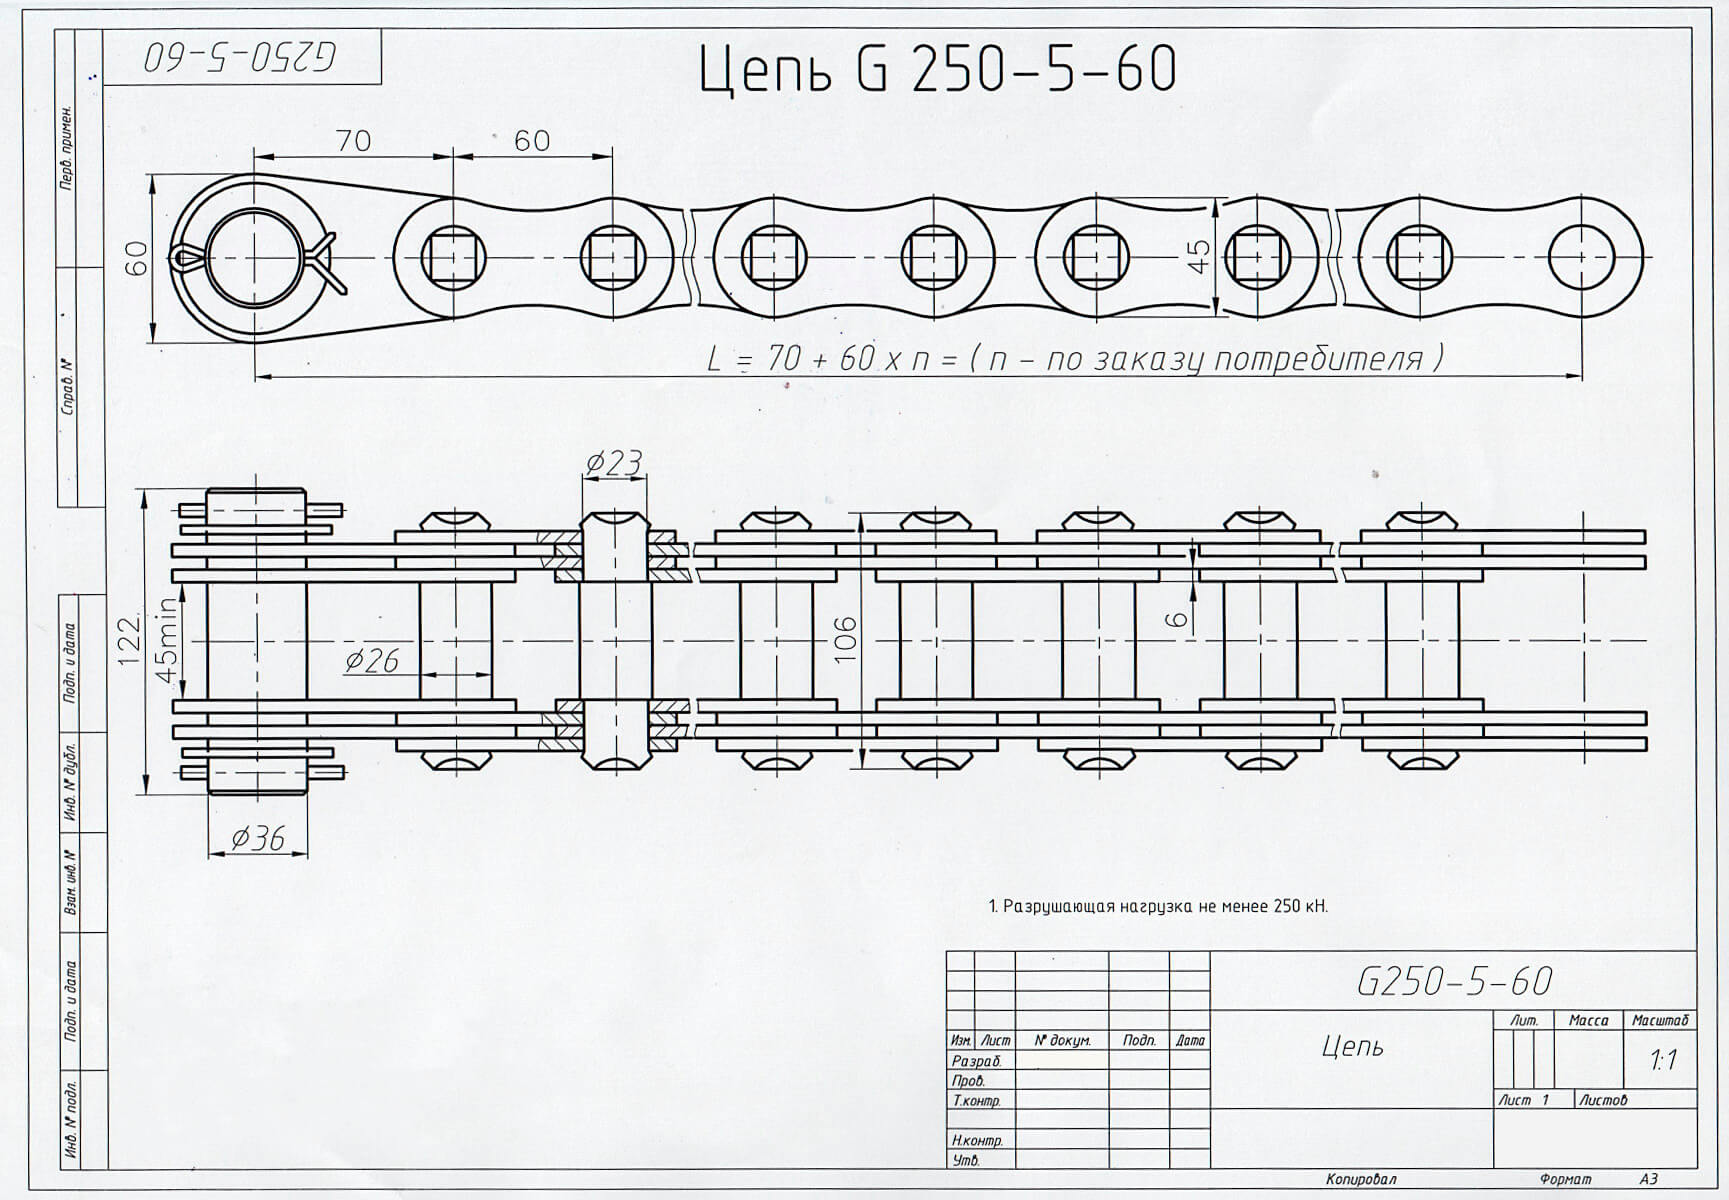 Чертеж цепи G250-5-60